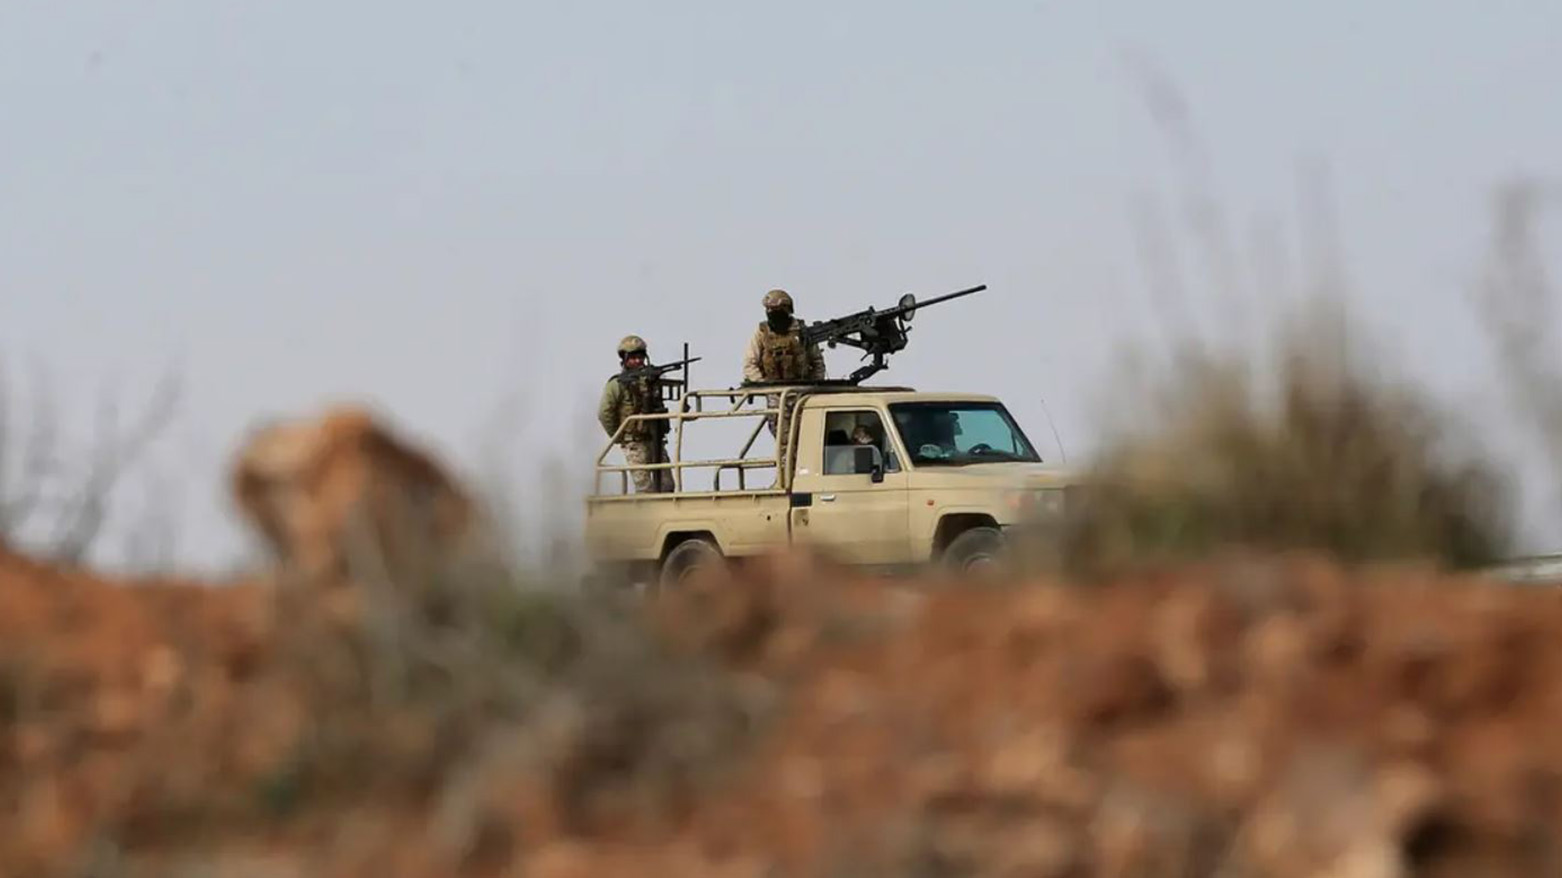 Jordan steps up airstrikes on drug smugglers in Syria